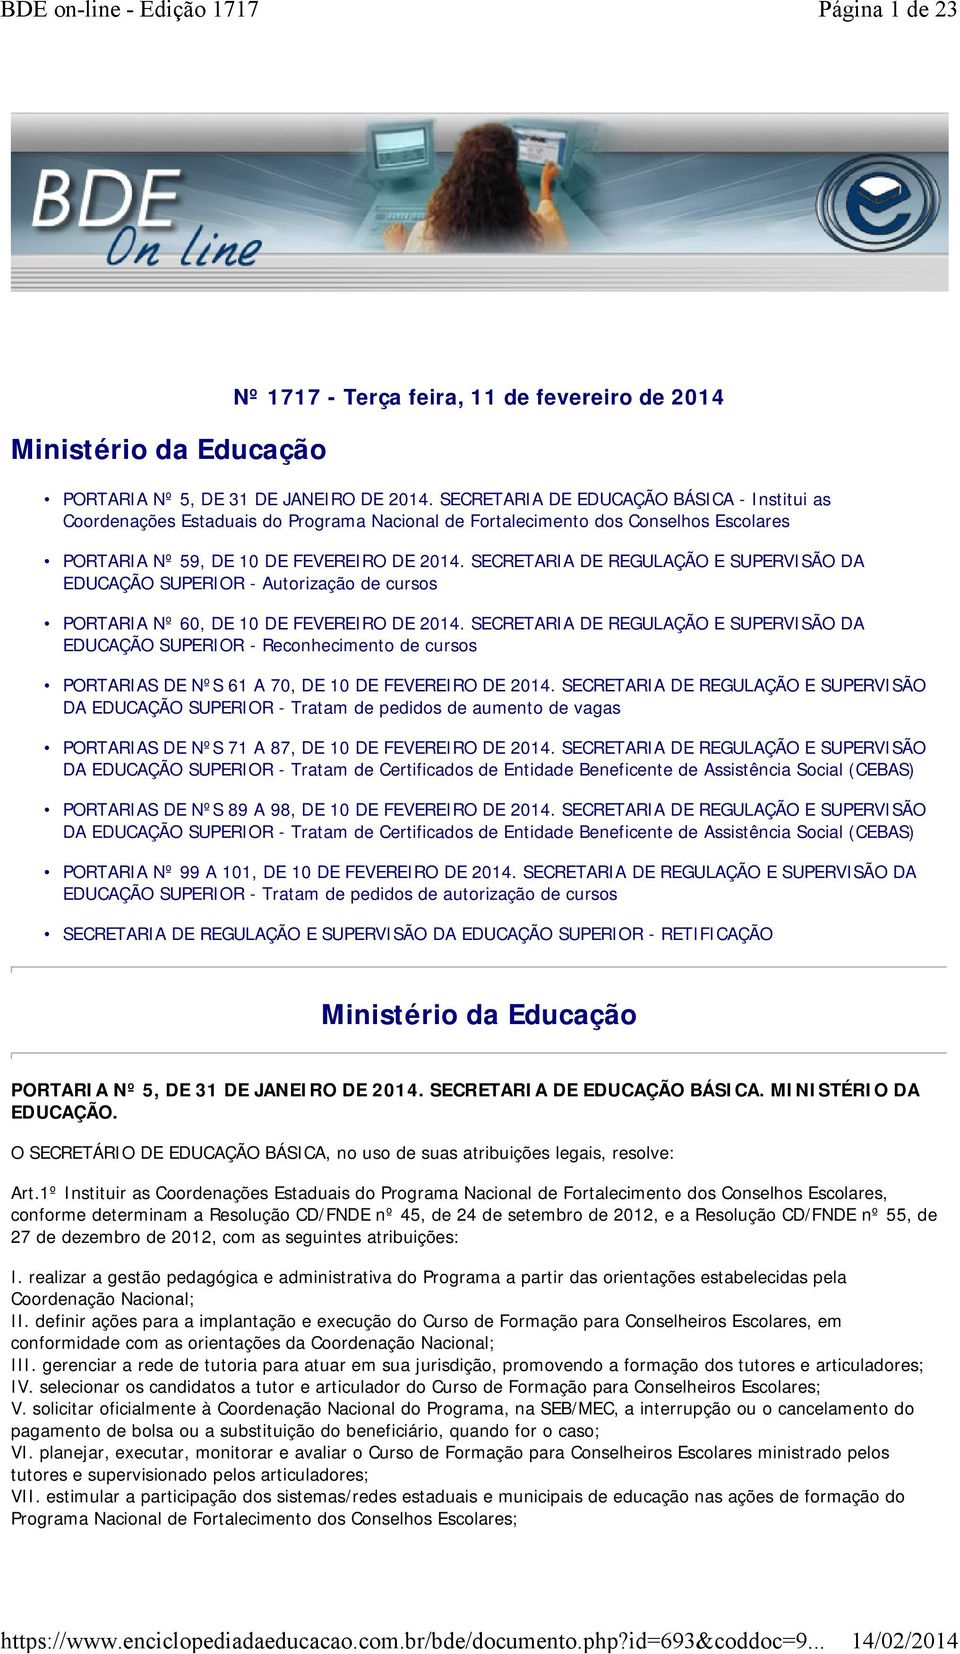 SECRETARIA DE REGULAÇÃO E SUPERVISÃO DA EDUCAÇÃO SUPERIOR - Autorização de cursos PORTARIA Nº 60, DE 10 DE FEVEREIRO DE 2014.